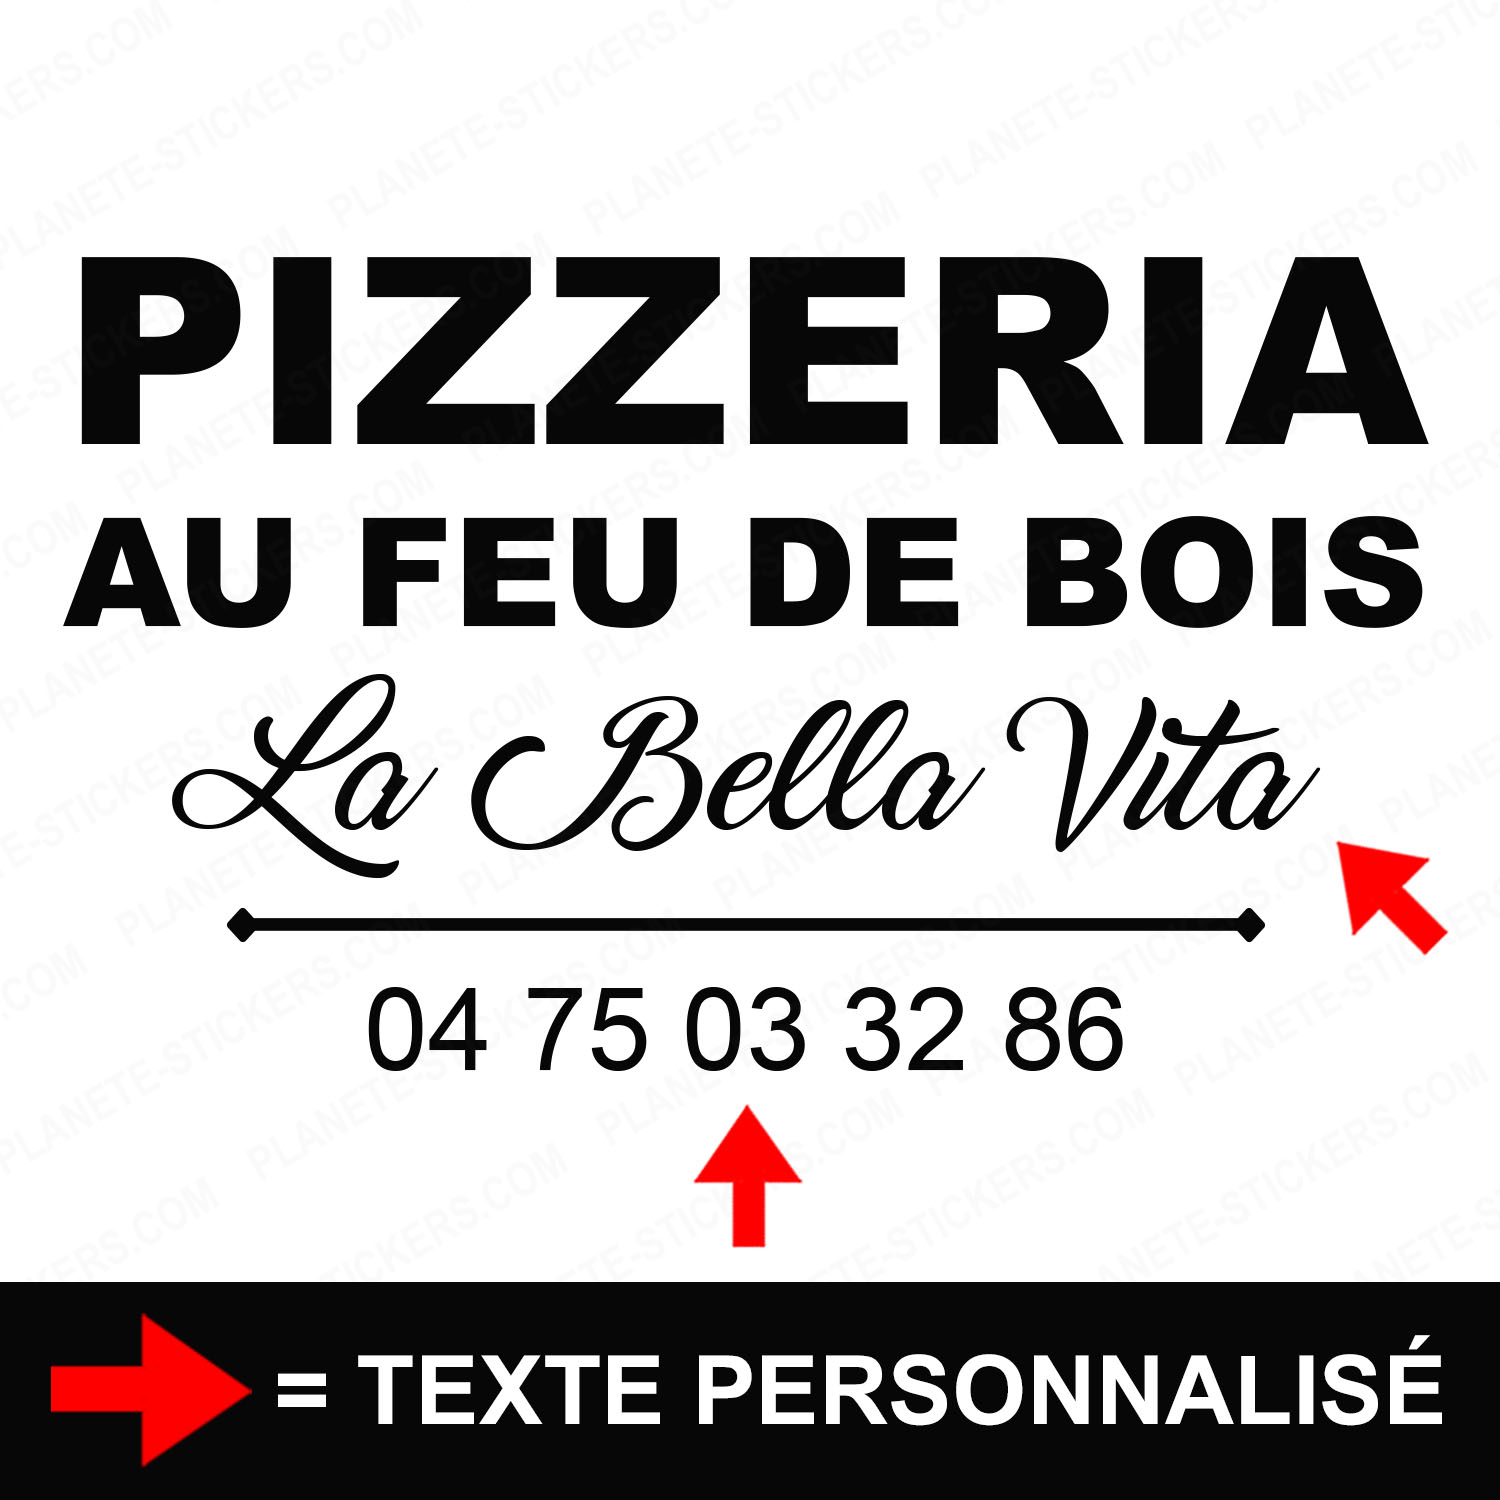 ref32pizzeriavitrine-stickers-pizzeria-au-feu-de-bois-vitrine-pizza-restaurant-sticker-personnalisé-autocollant-pro-restaurateur-vitre-resto-professionnel-logo-écriture-2